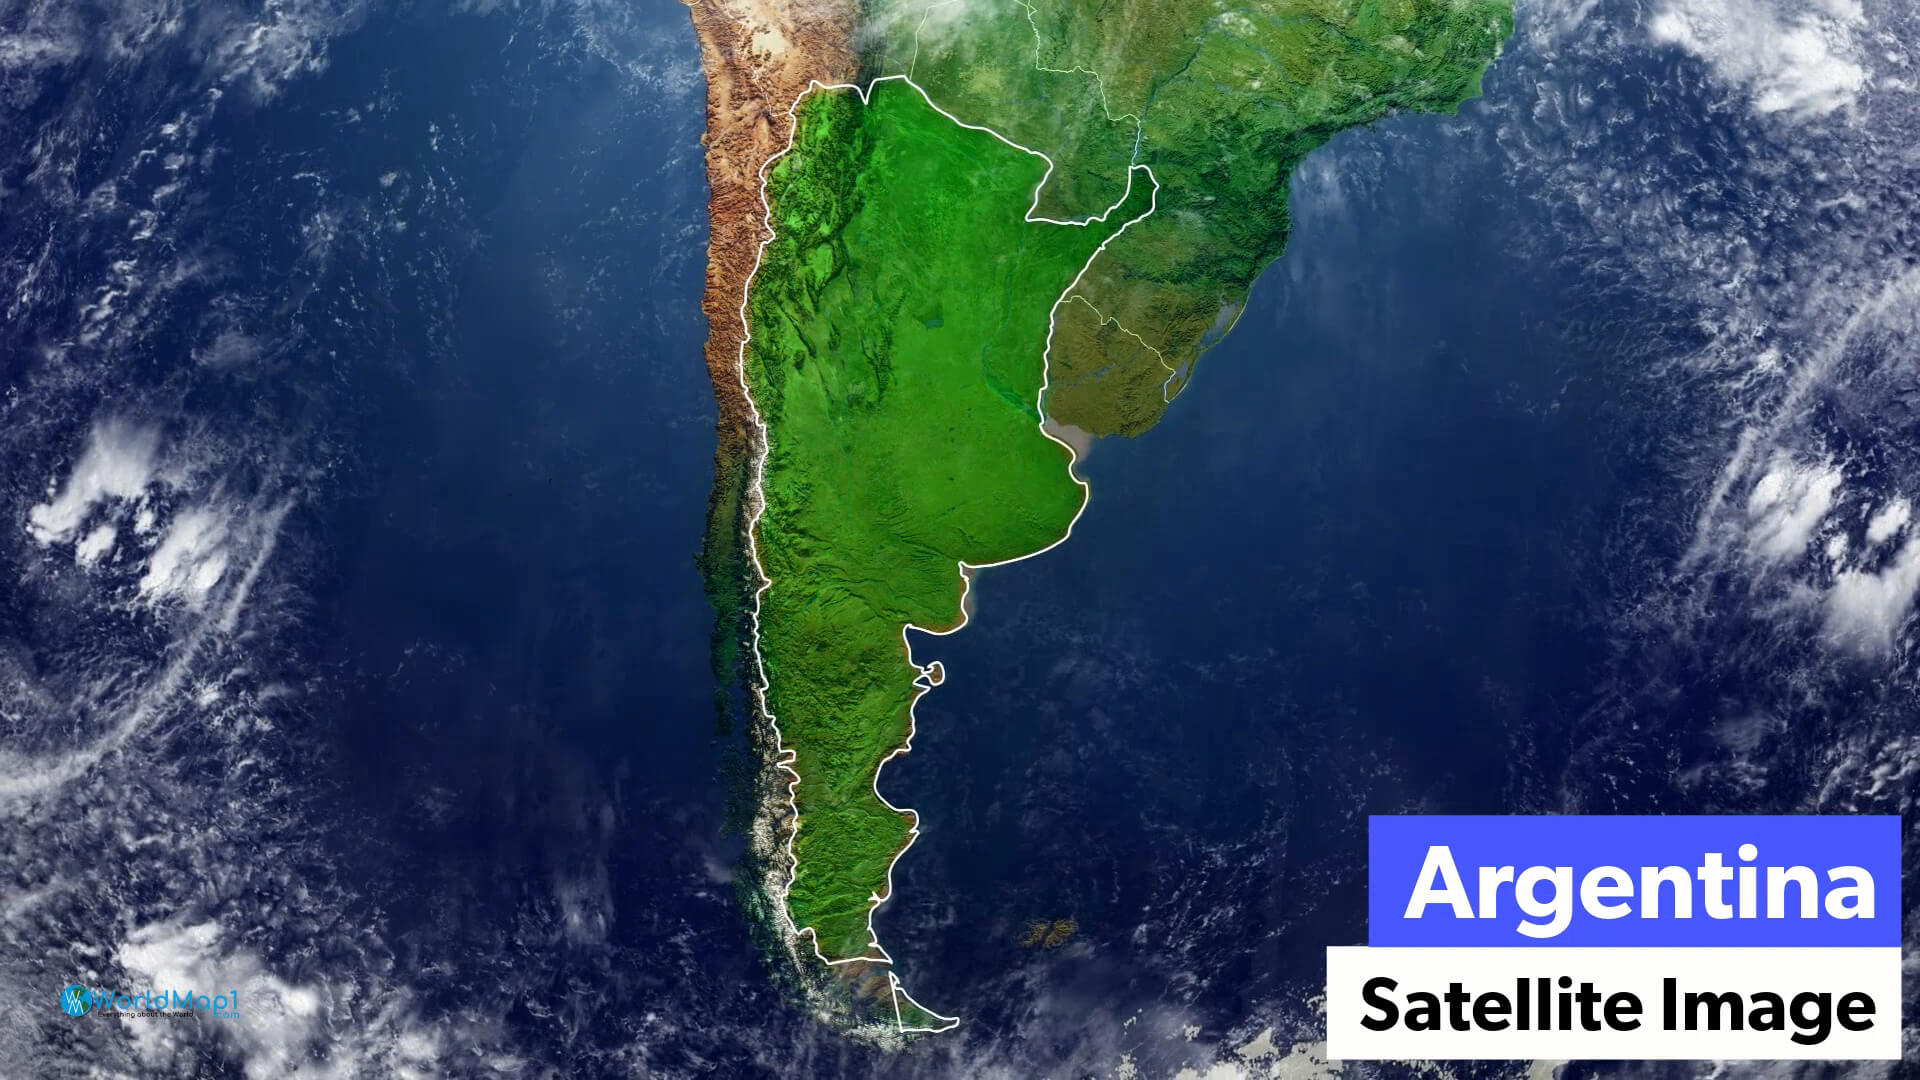 Argentina Satellite Image Map